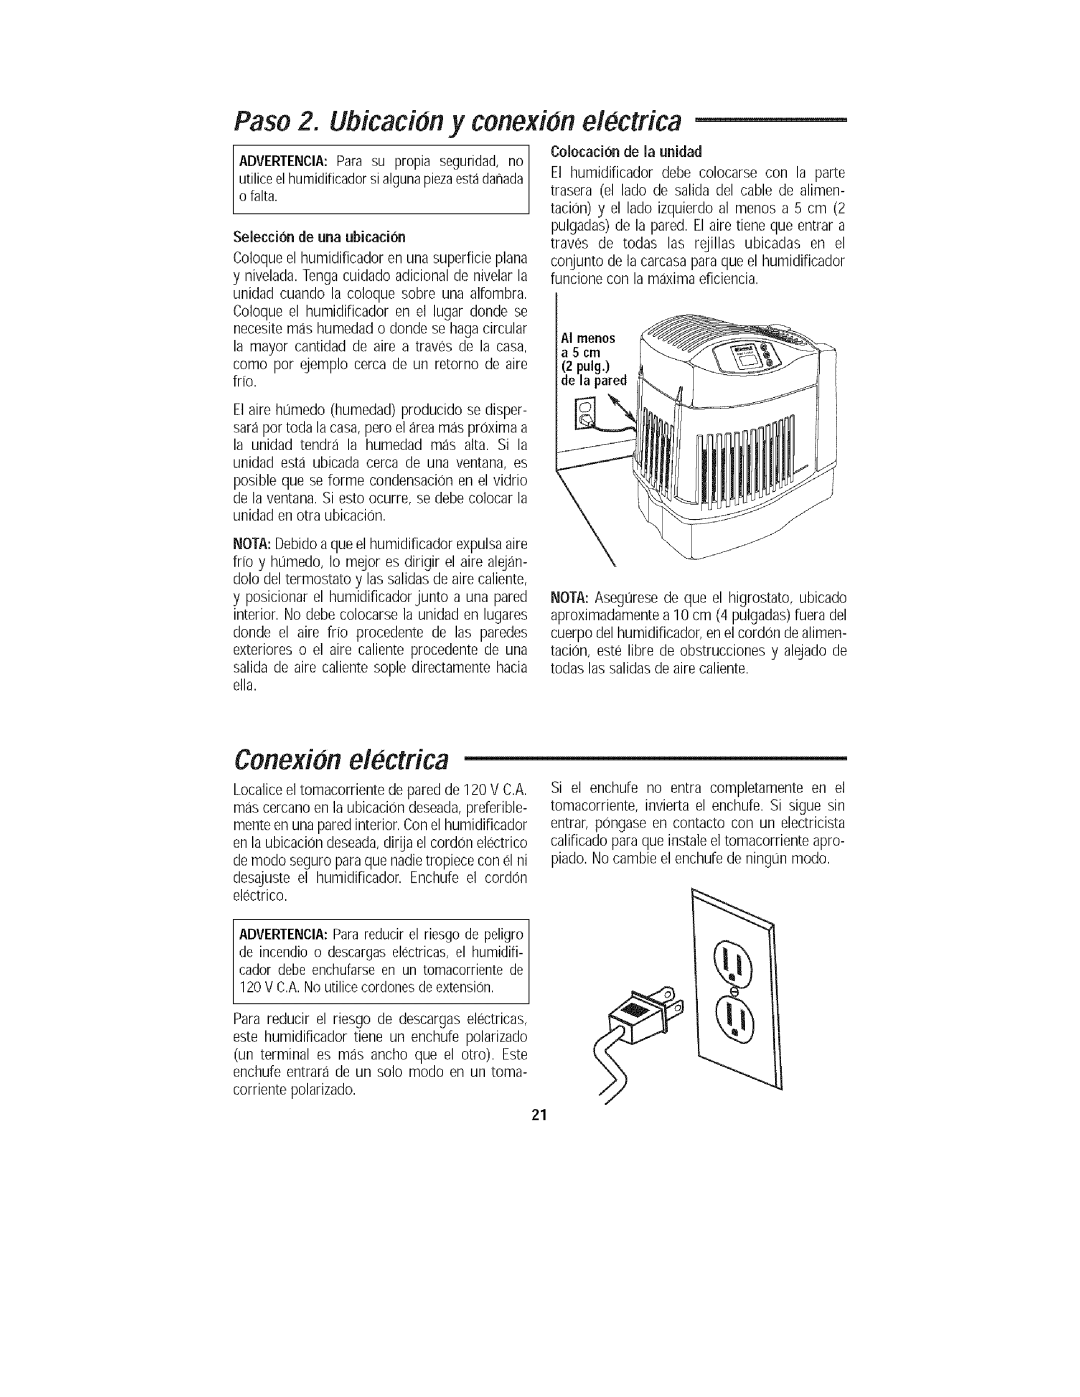 Kenmore 758.15408 manual Paso 2. Ubicacion y conexion electrica, Conexion electrica 